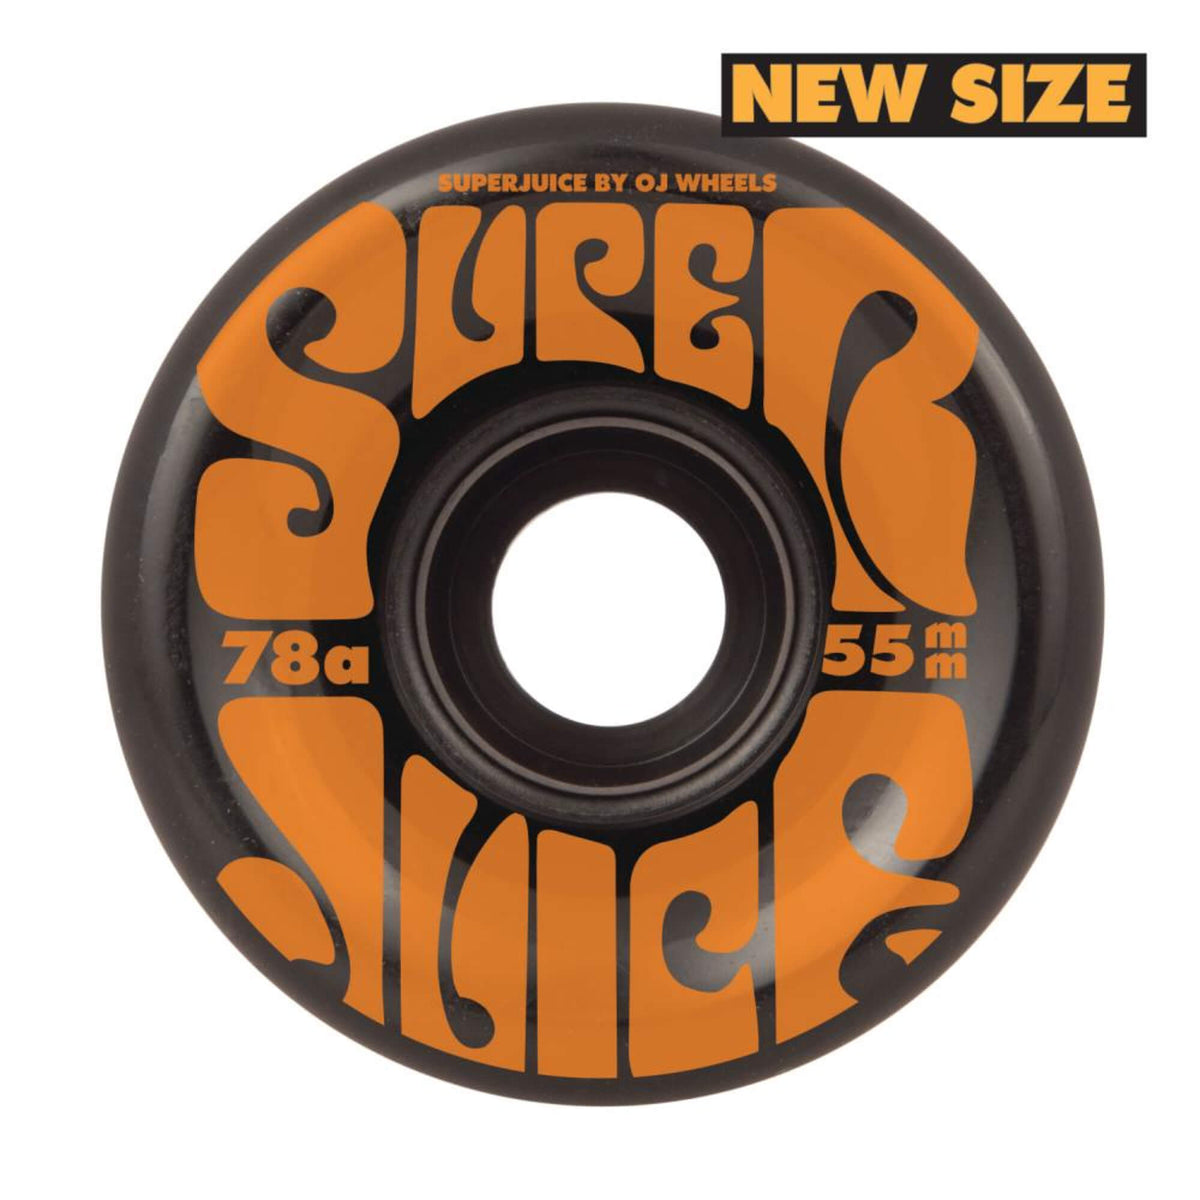 OJ Mini Super Juice Skateboard Wheels Black 78a Soft 55mm